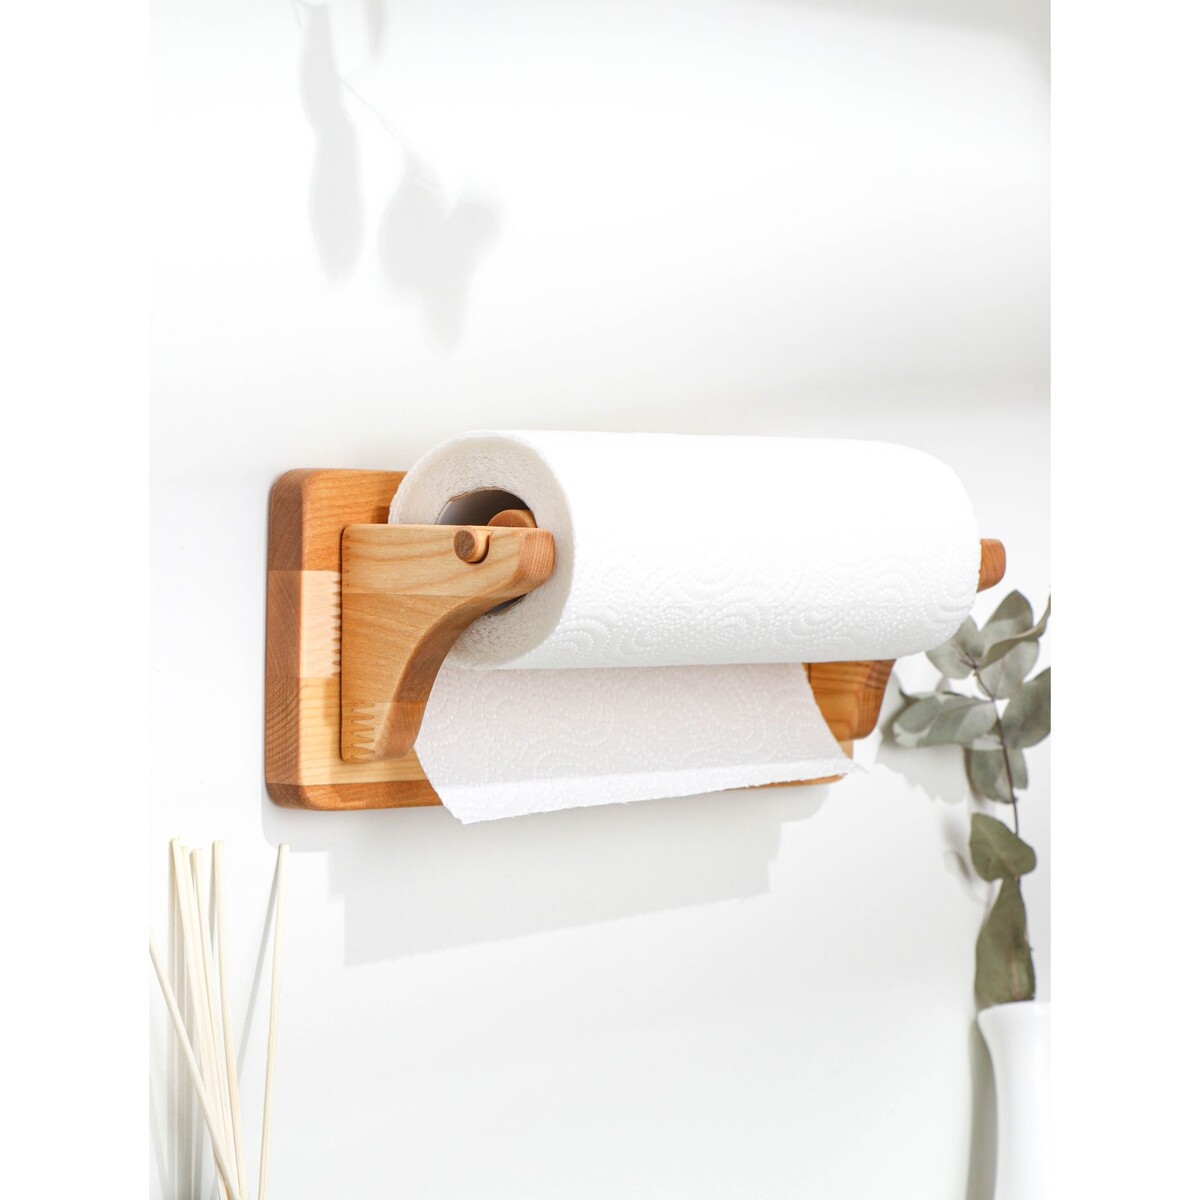 Держатель для бумажных полотенец настенный, береза, 30,5×11,5 см держатель для кухонных бумажных полотенец 13×25 см бук и рисунок микс